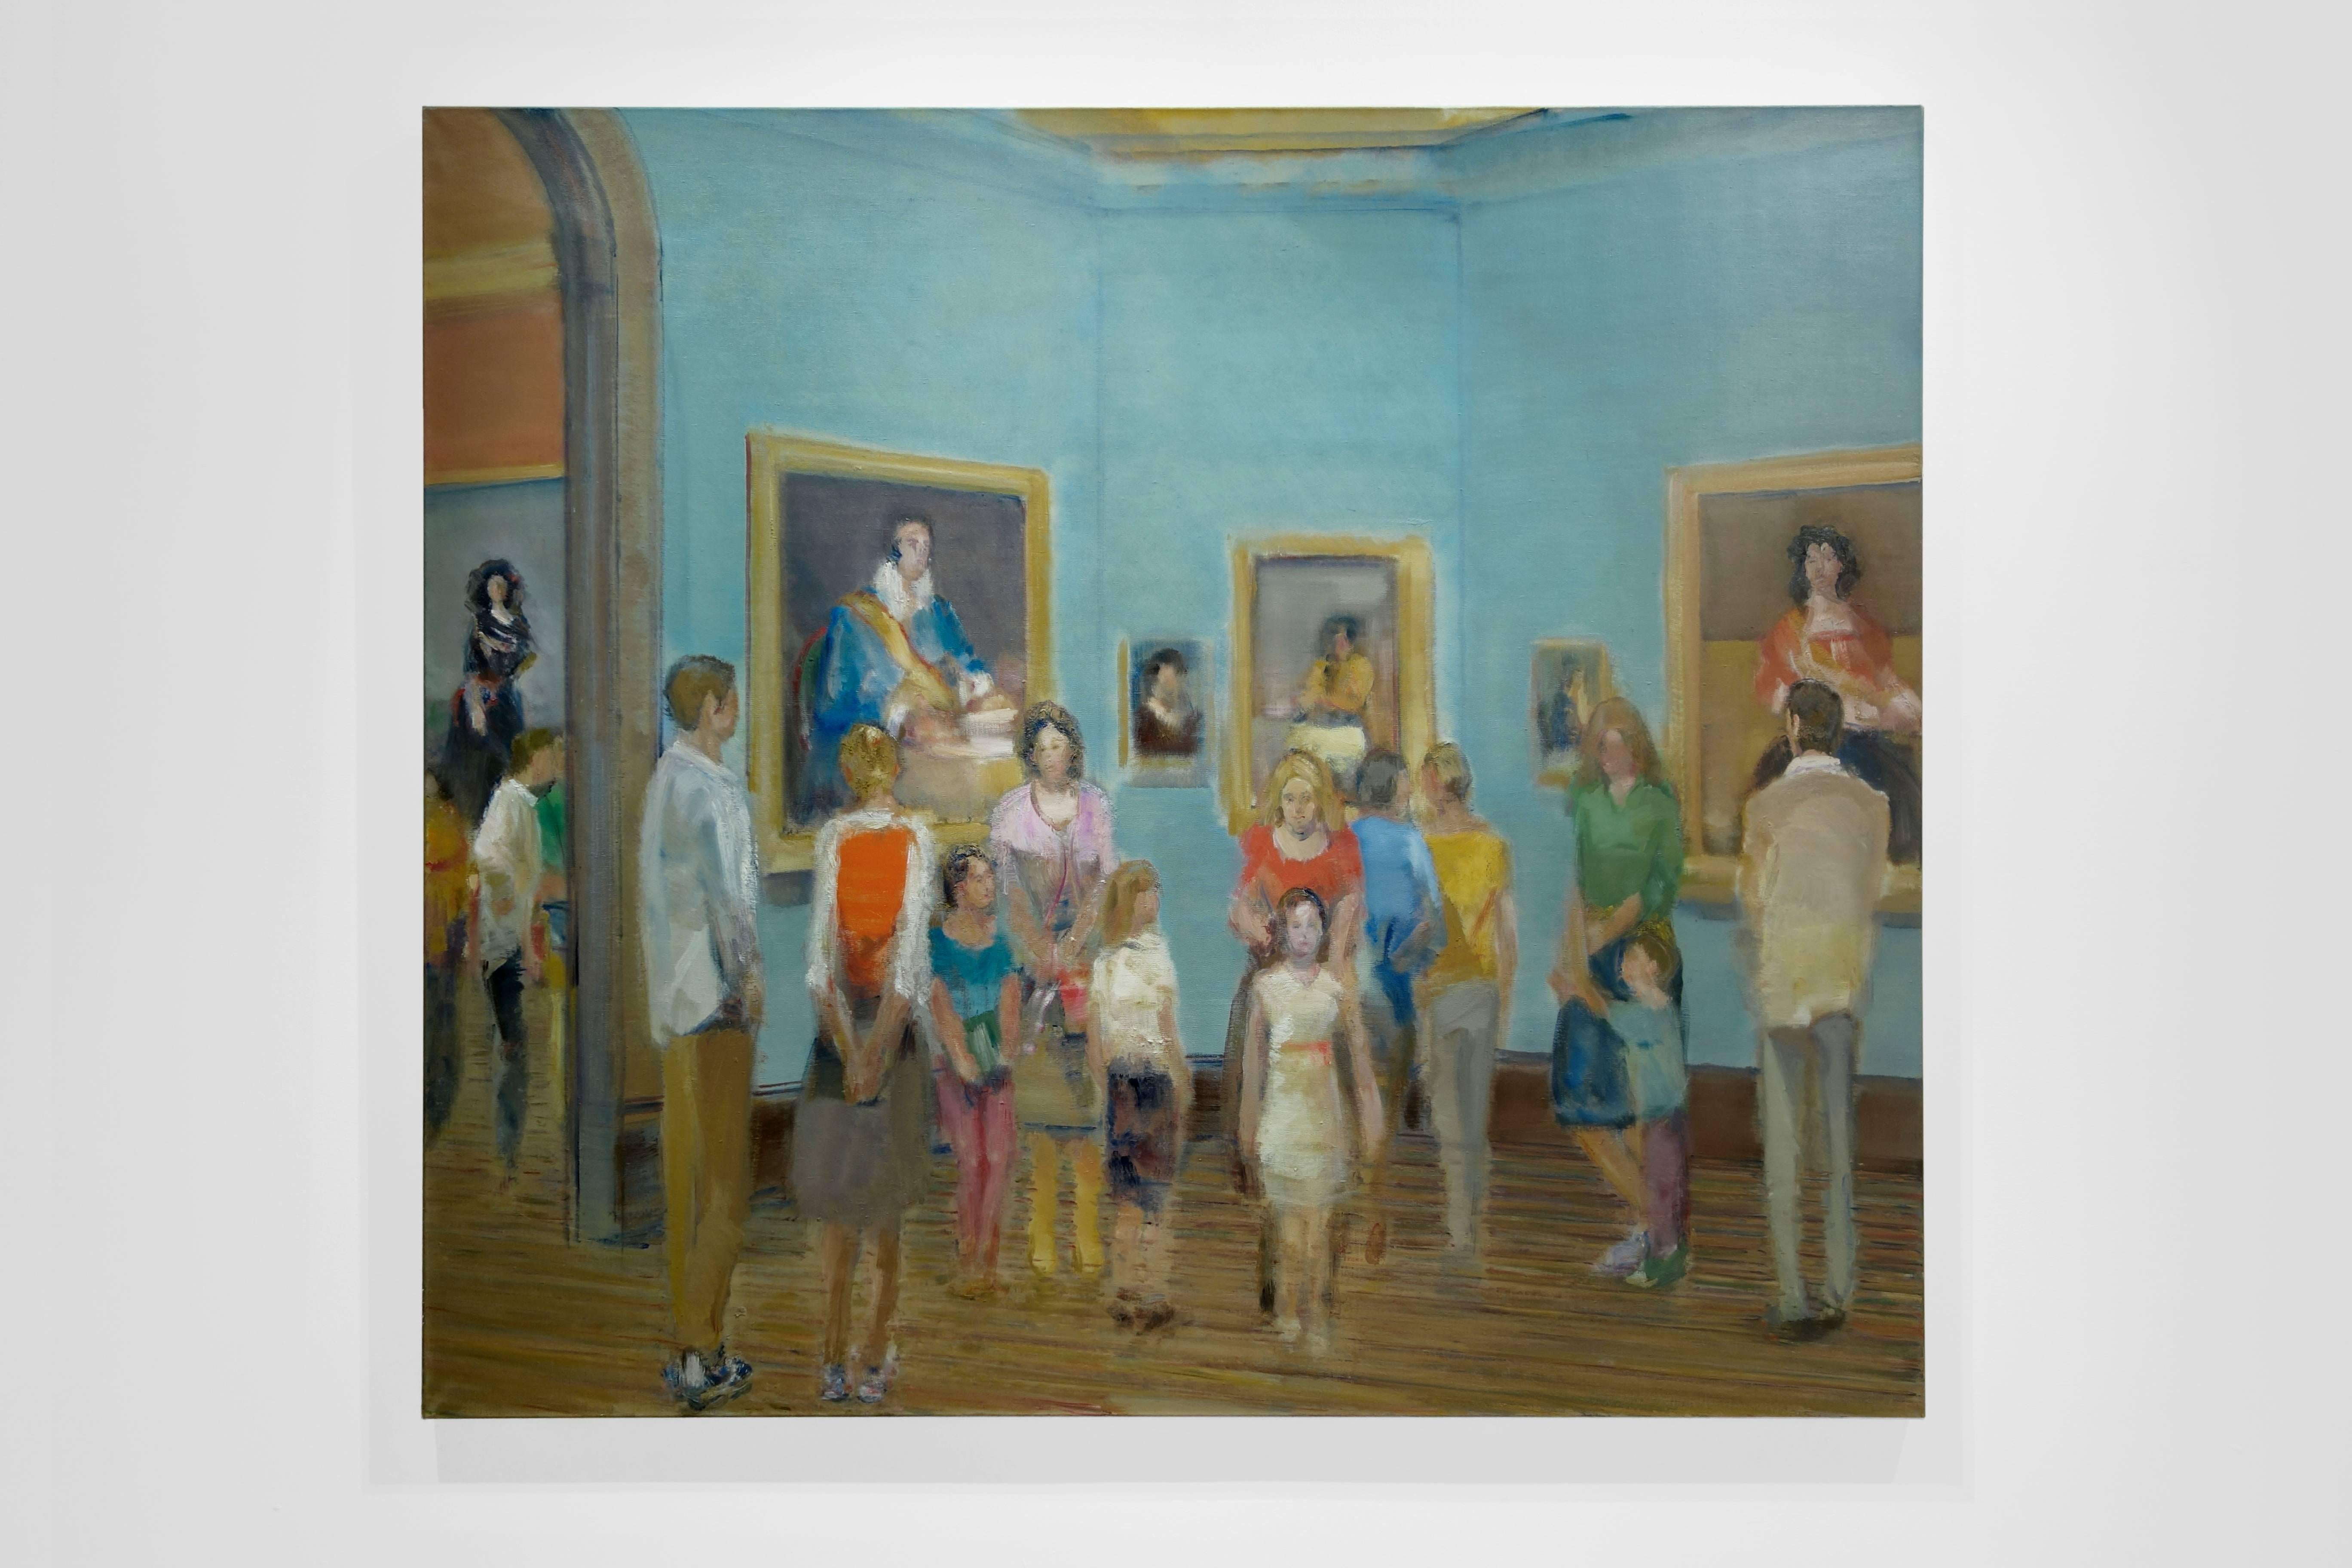 PRADO II, people standing in gallery, blue walls, paintings on wall - Painting by Simon Nicholas